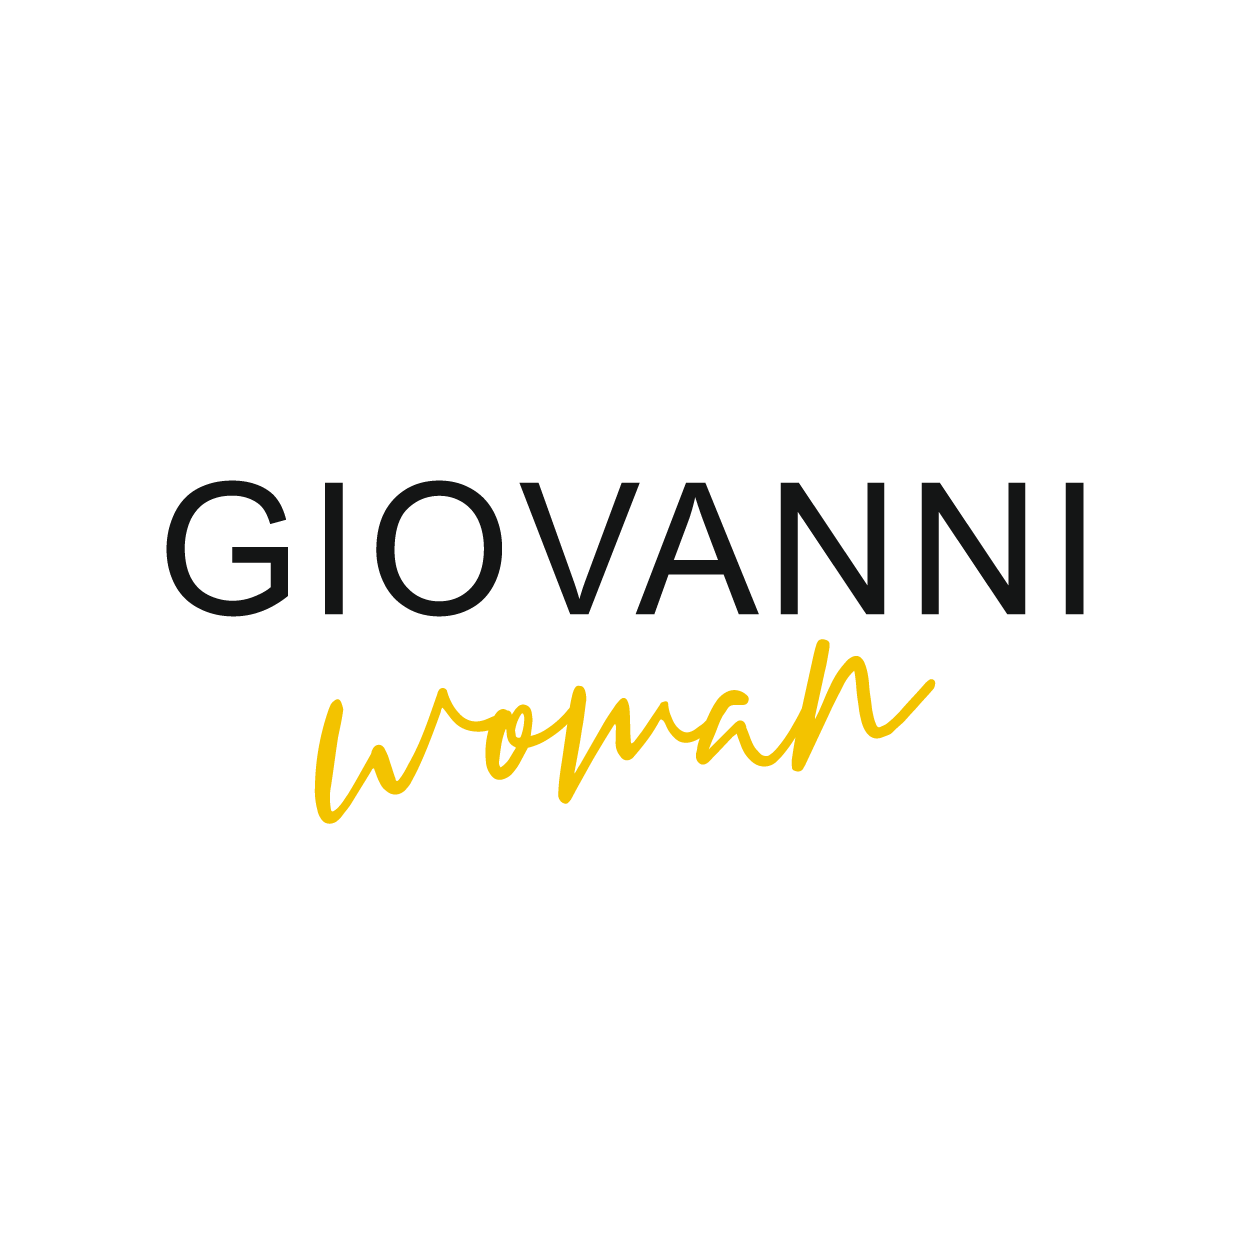 Giovanni woman